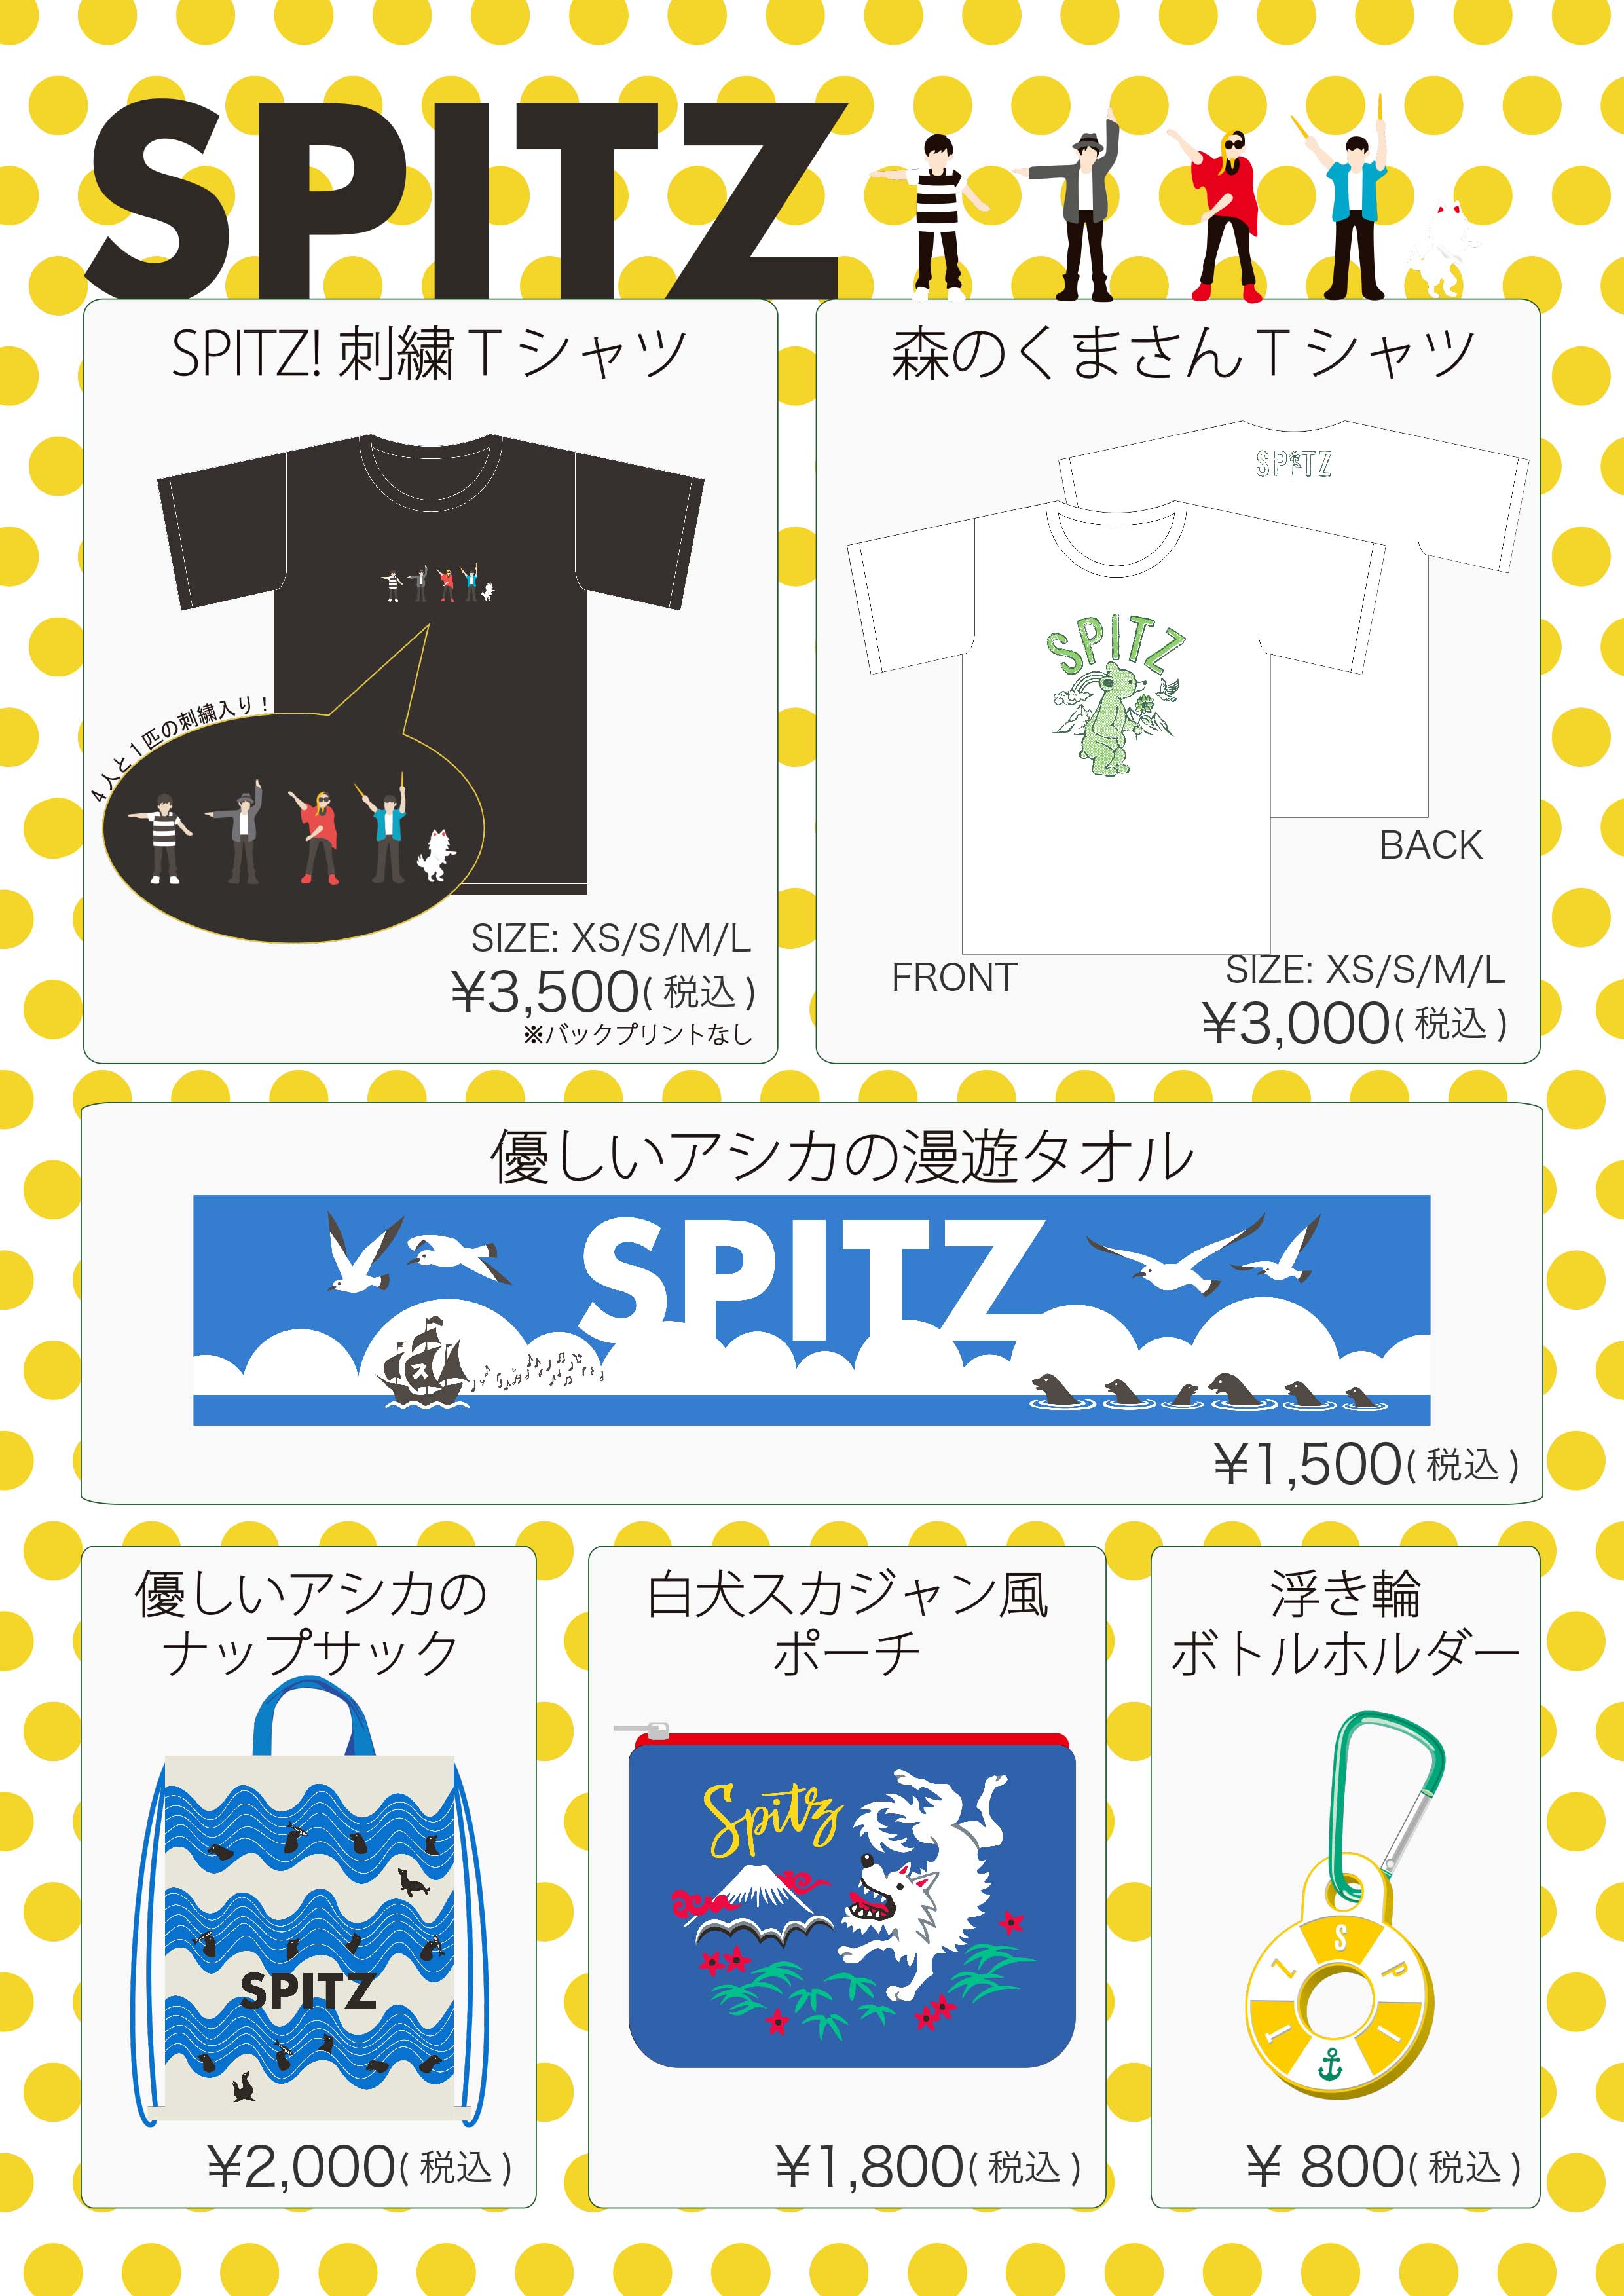 SPITZ SUMMER 2019 [グッズ]｜SPITZ mobile